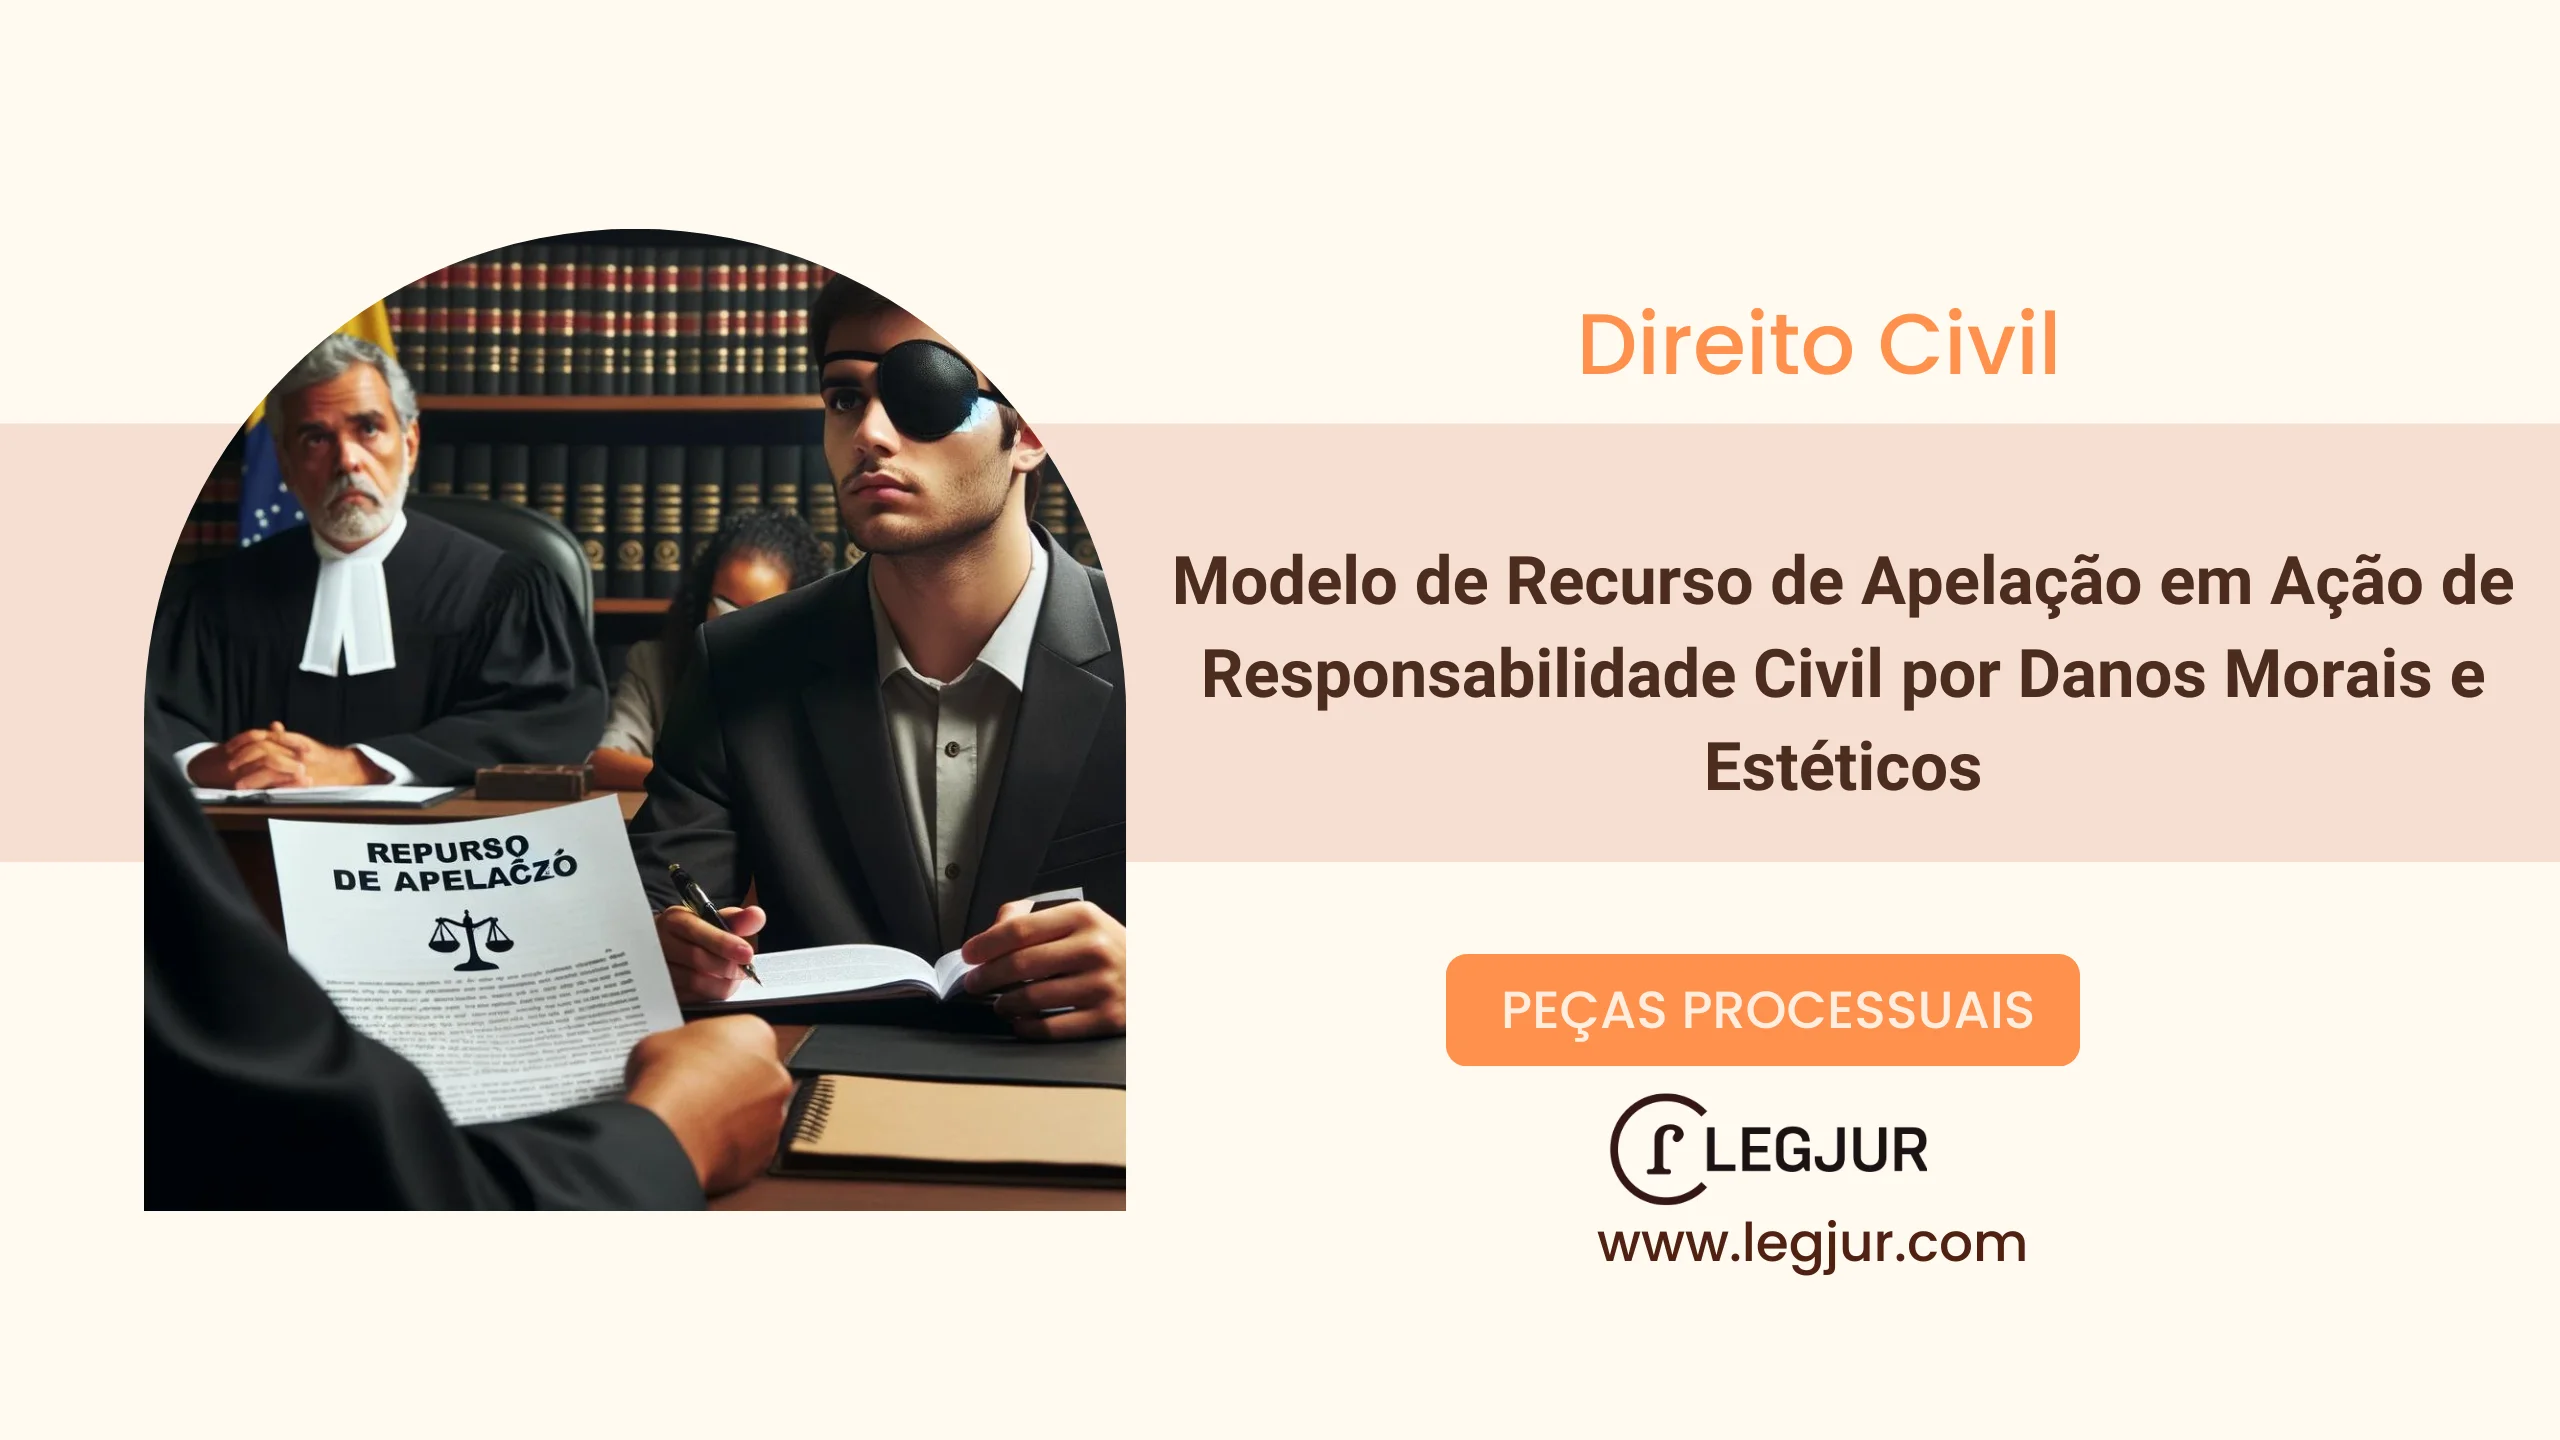 Modelo de Recurso de Apelação em Ação de Responsabilidade Civil por Danos Morais e Estéticos